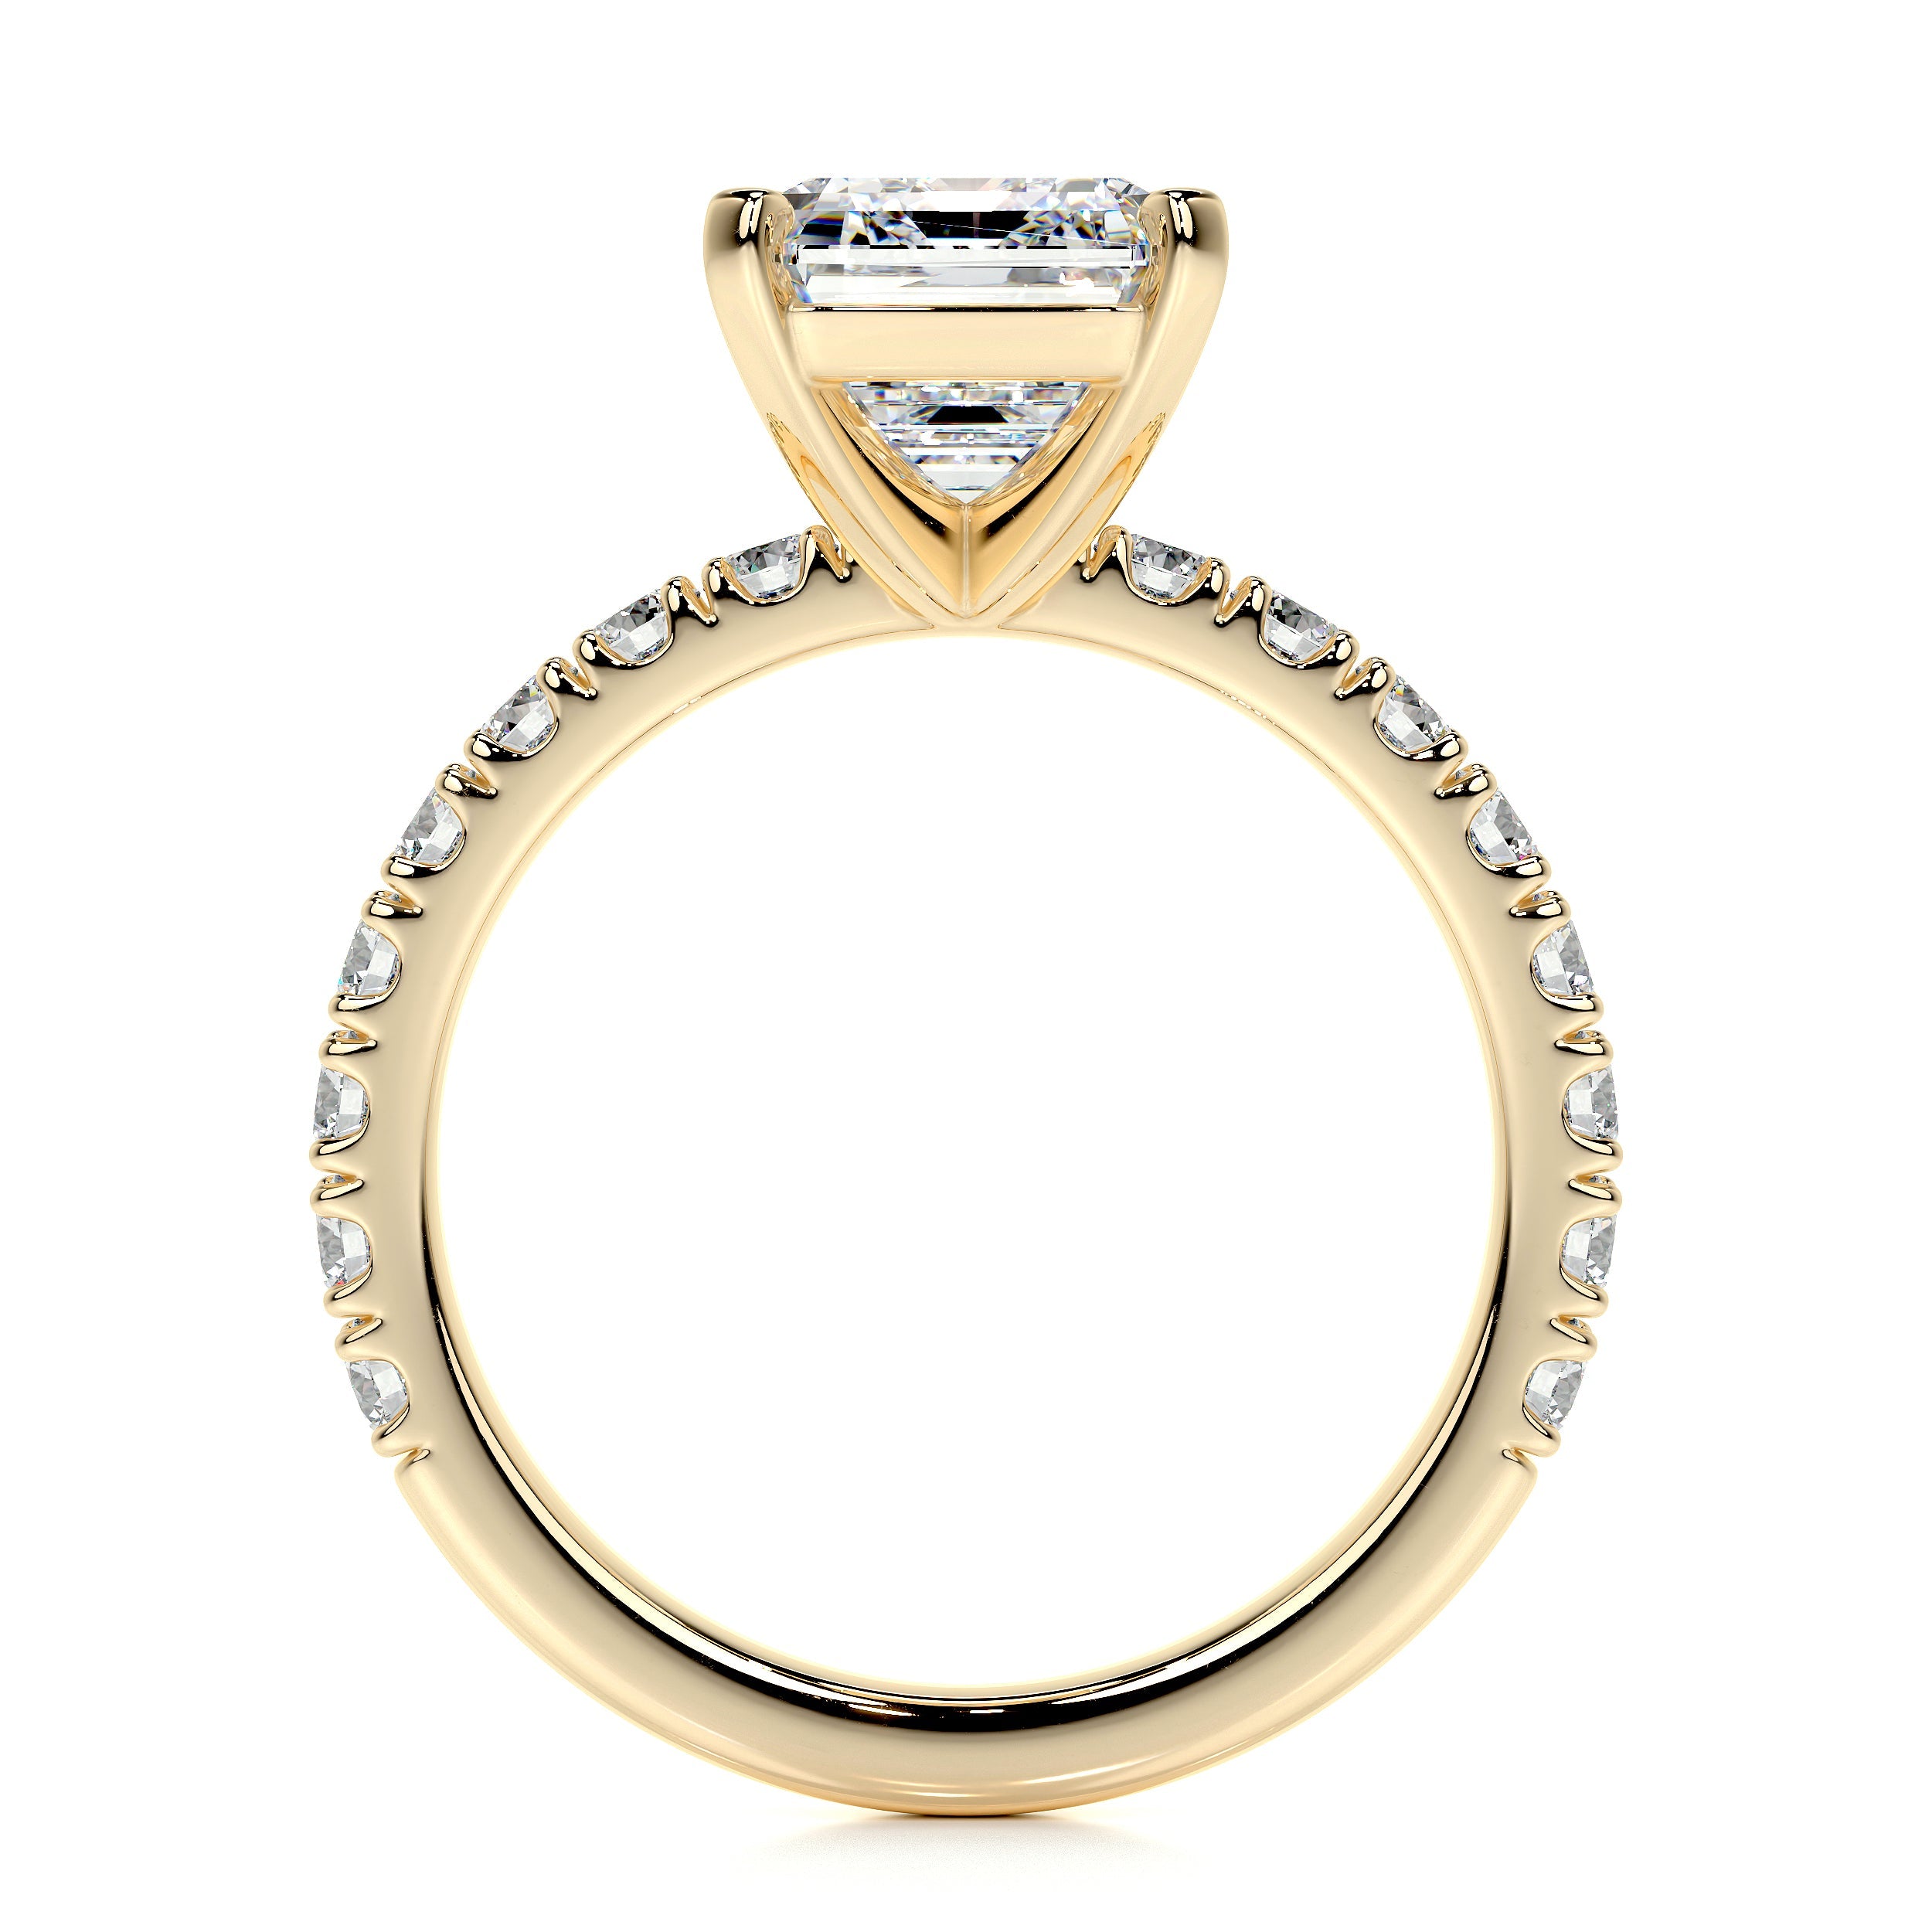 Royal Lab Grown Diamond Ring   (3.5 Carat) -18K Yellow Gold